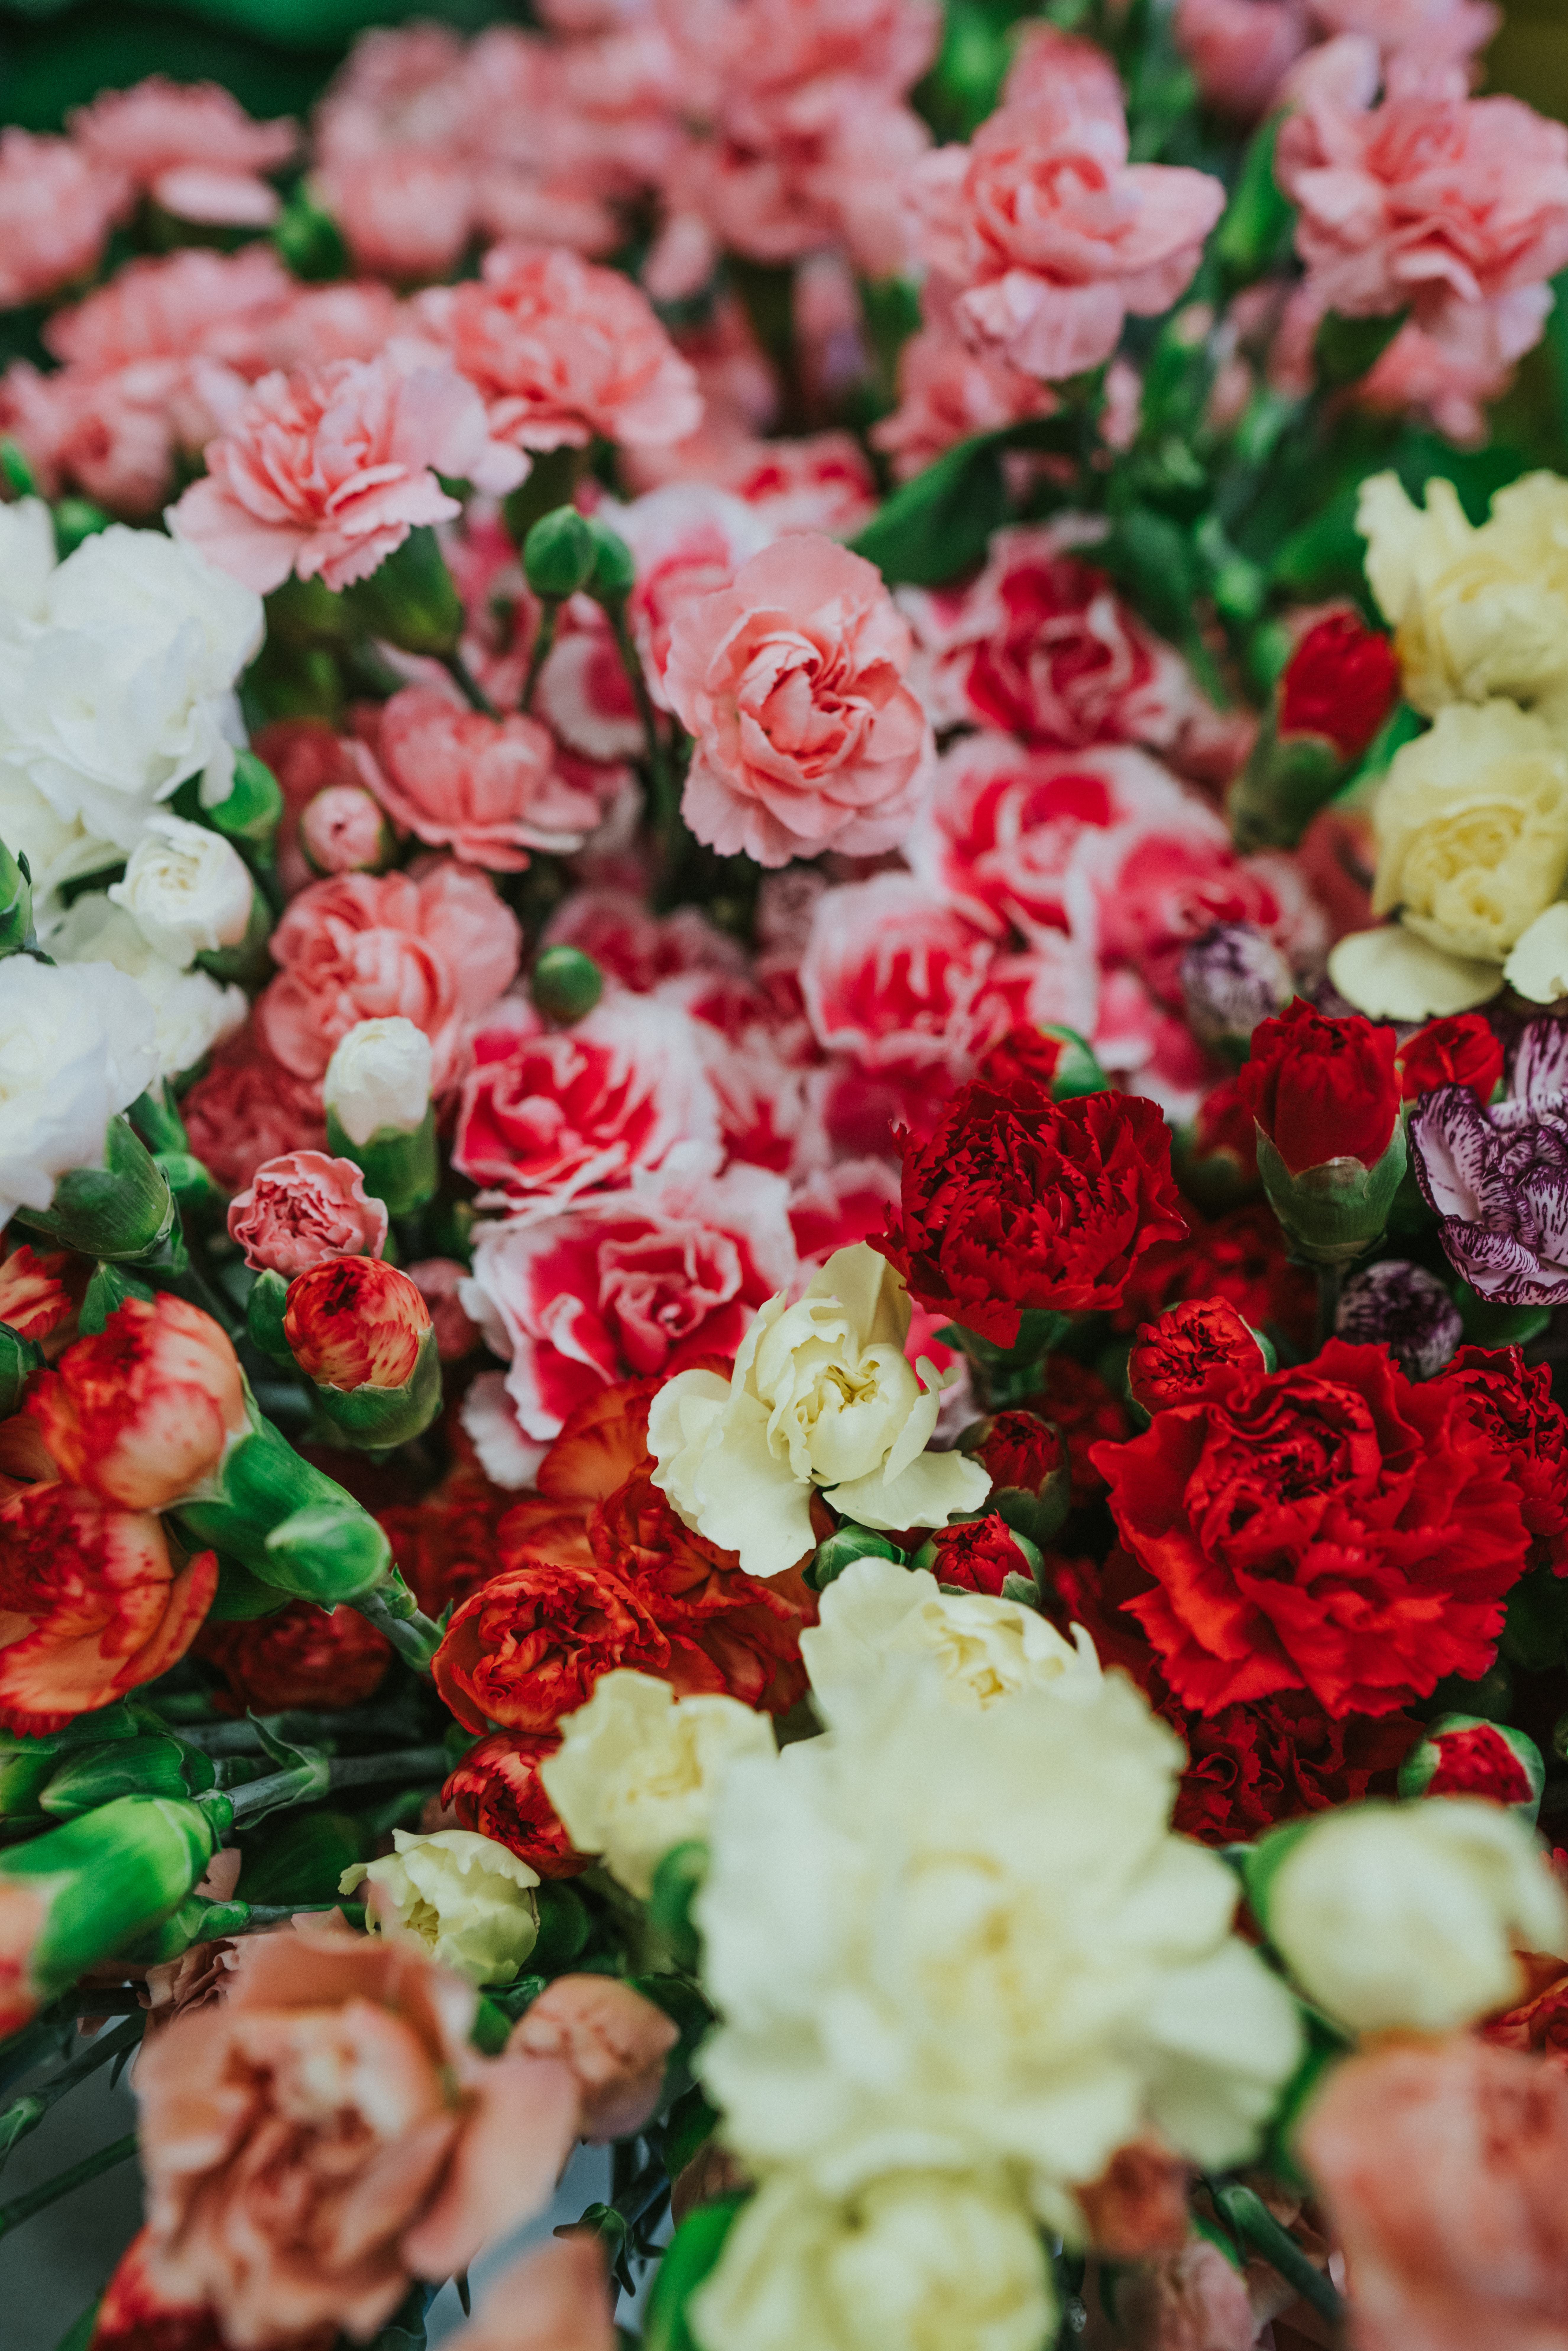 在您的 PC 桌面上免費下載 花卉, 花束, 多彩多姿, 五颜六色, 康乃馨 圖片